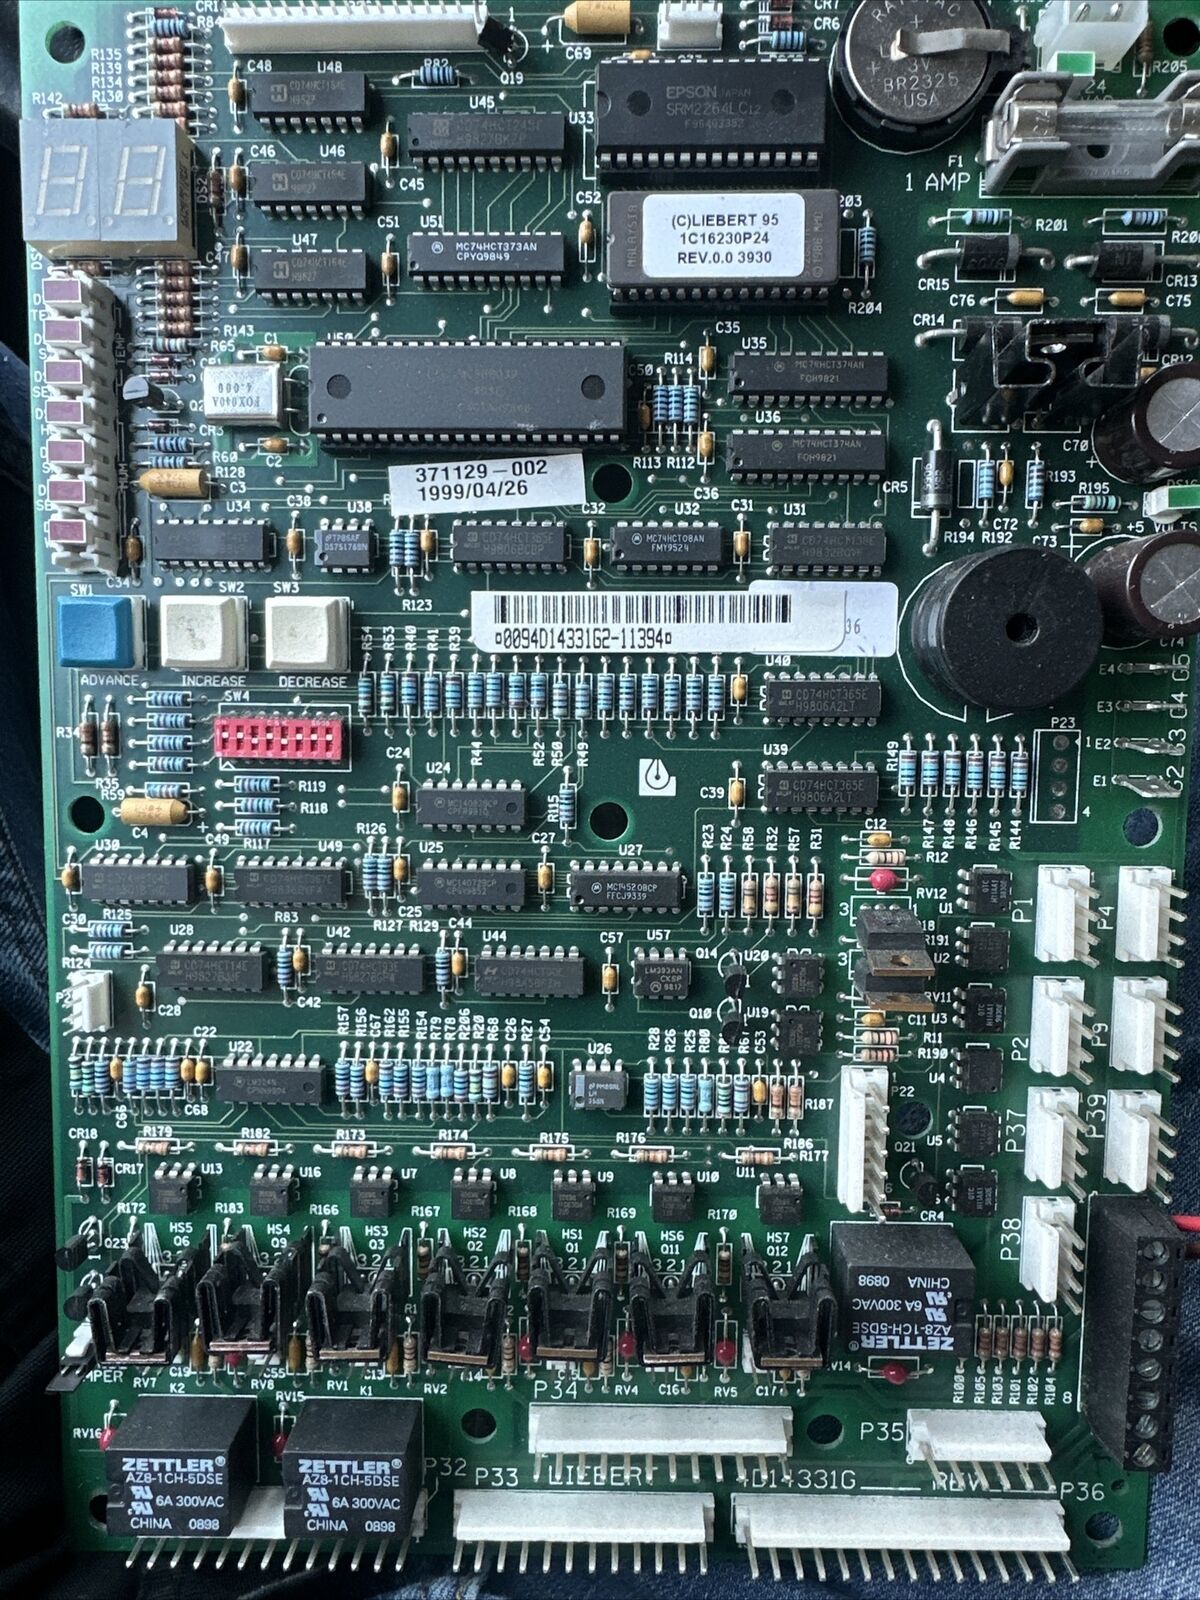 Liebert Challenger Control Board & Display Panel, 4D14331G2 Rev 4